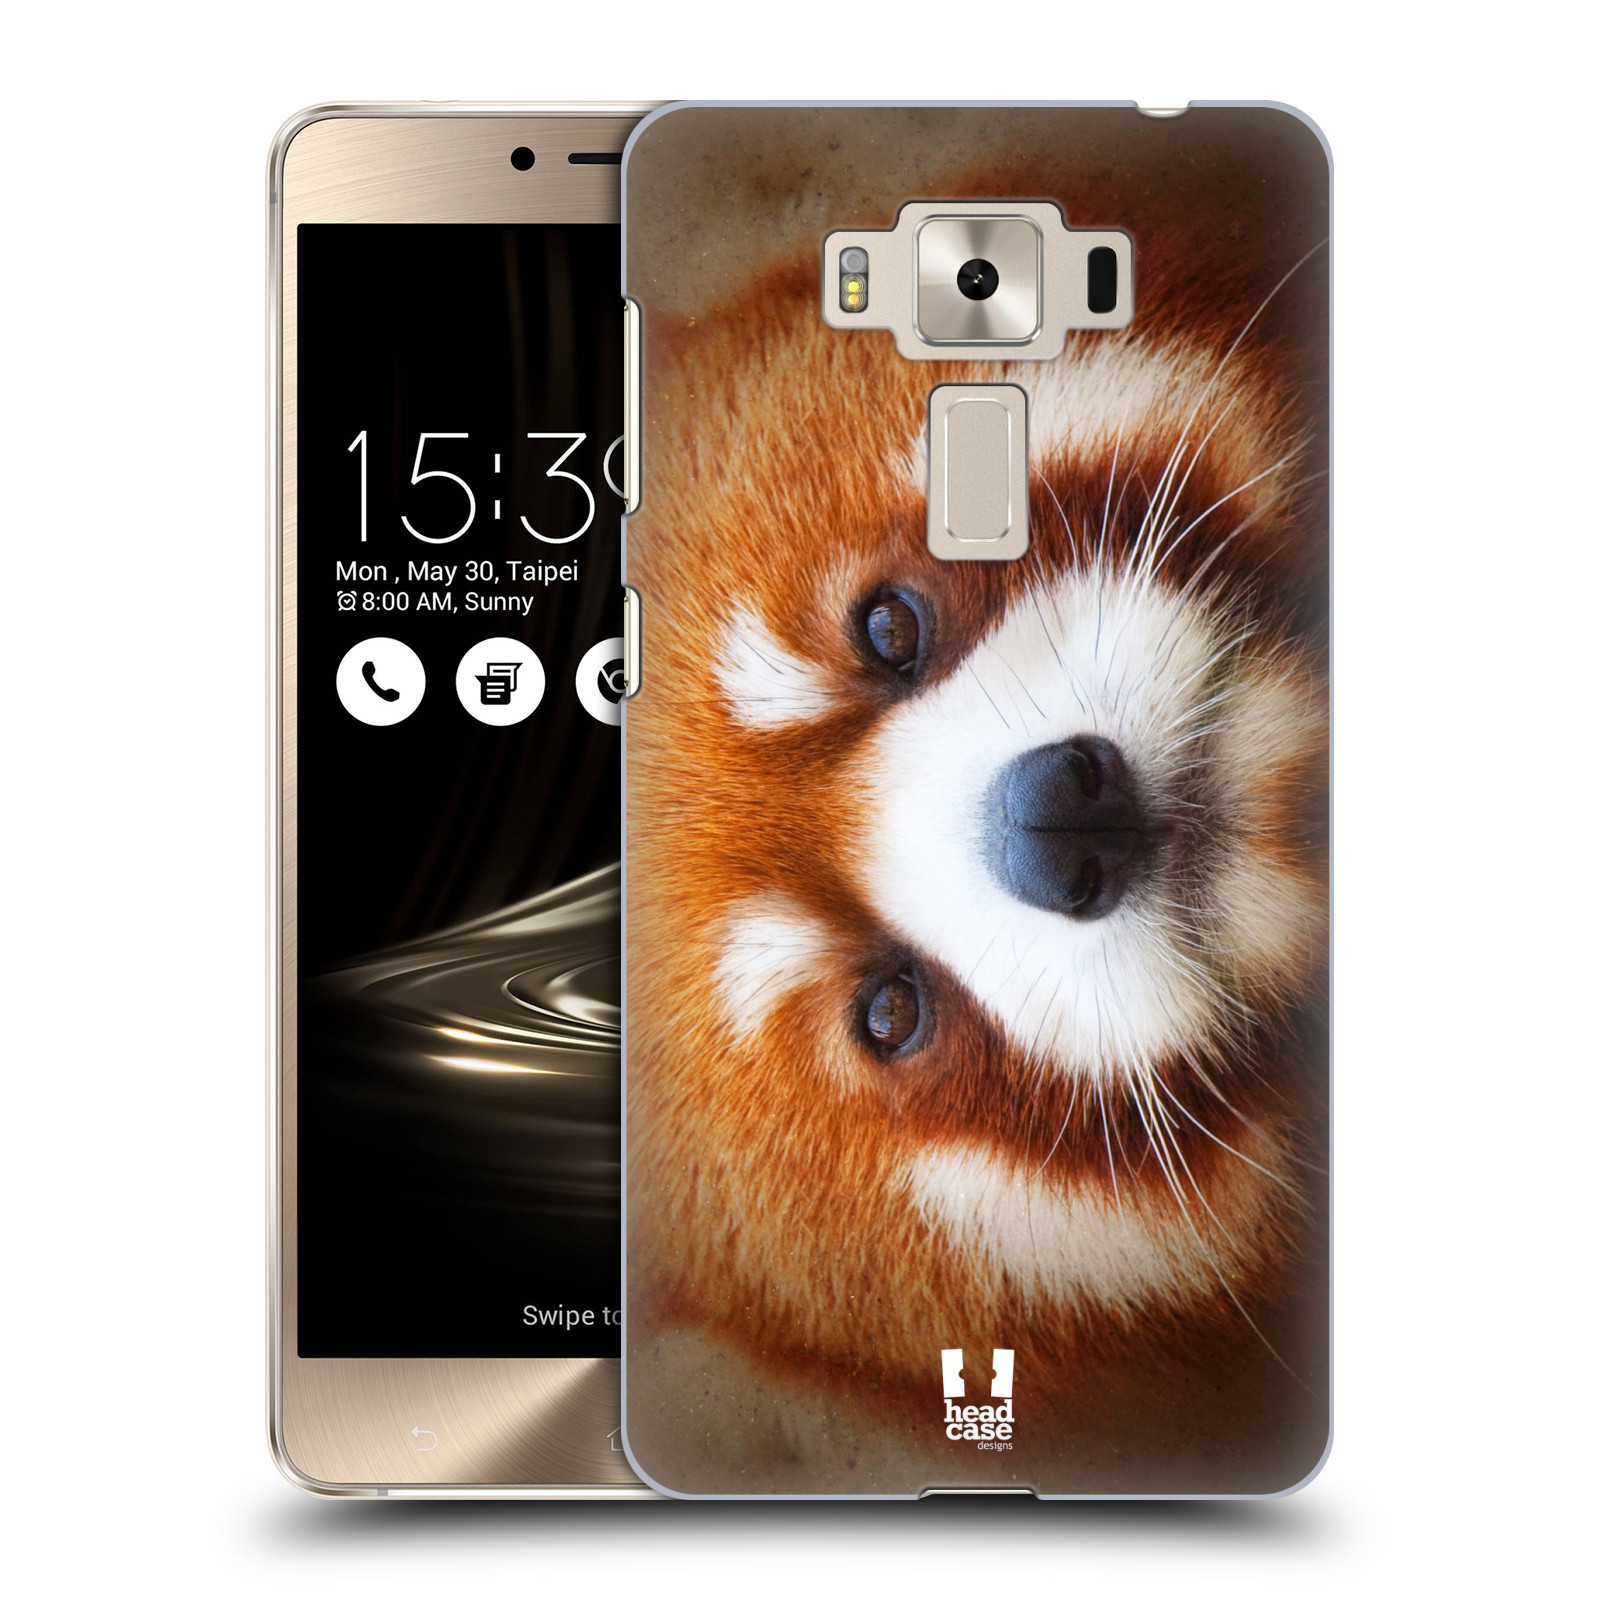 HEAD CASE plastový obal na mobil Asus Zenfone 3 DELUXE ZS550KL vzor Zvířecí tváře 2 medvěd panda rudá